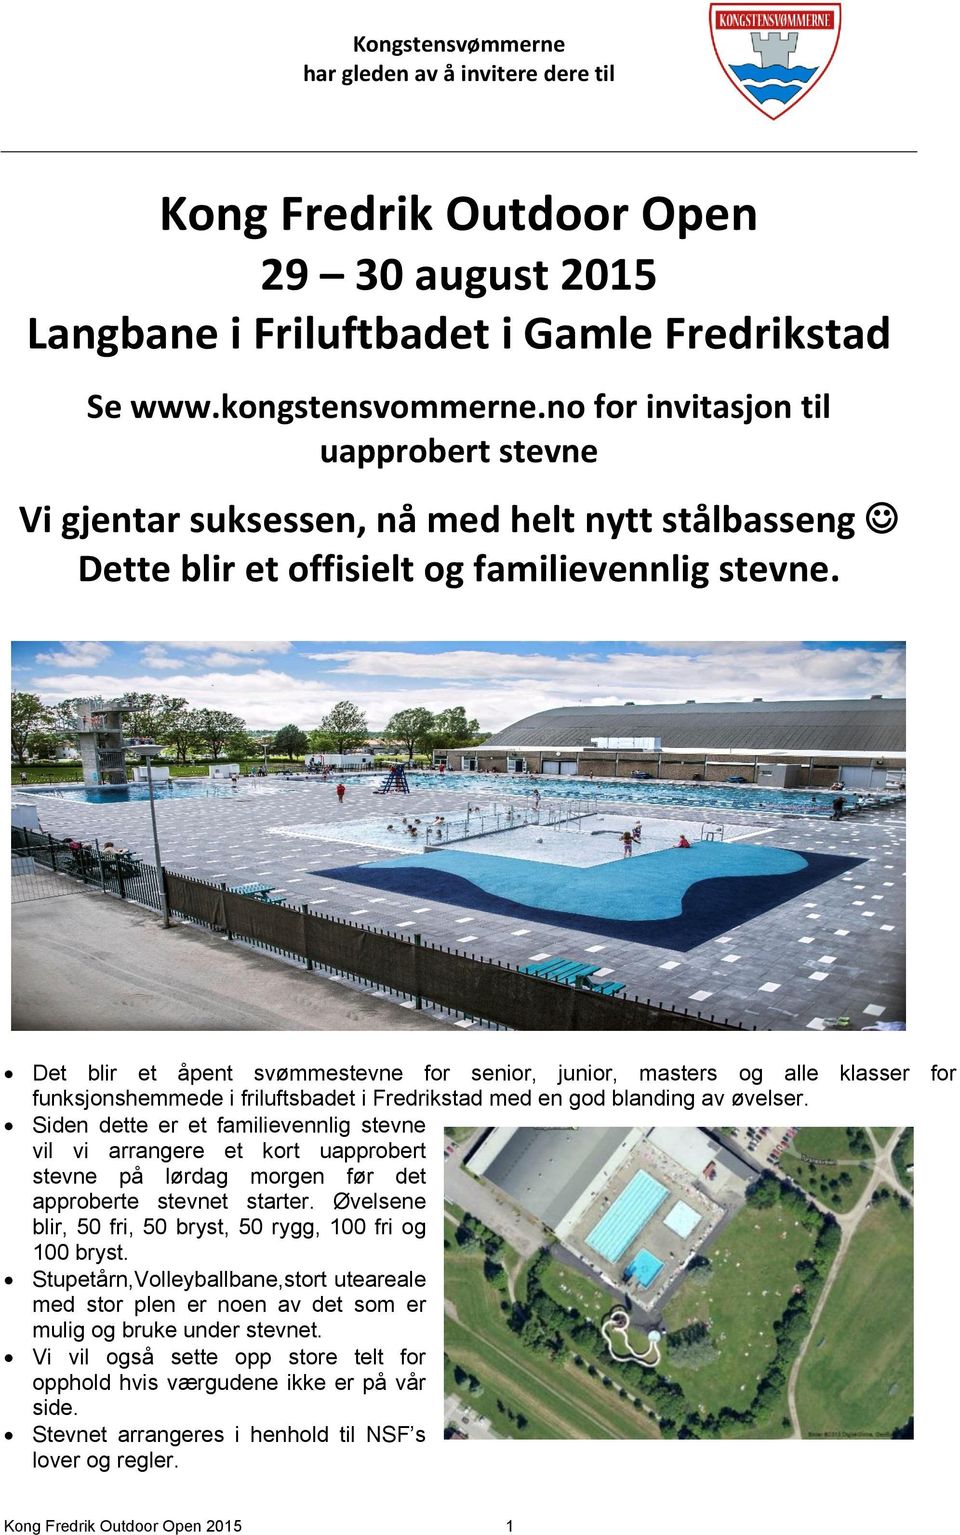 Det blir et åpent svømmestevne for senior, junior, masters og alle klasser for funksjonshemmede i friluftsbadet i Fredrikstad med en god blanding av øvelser.